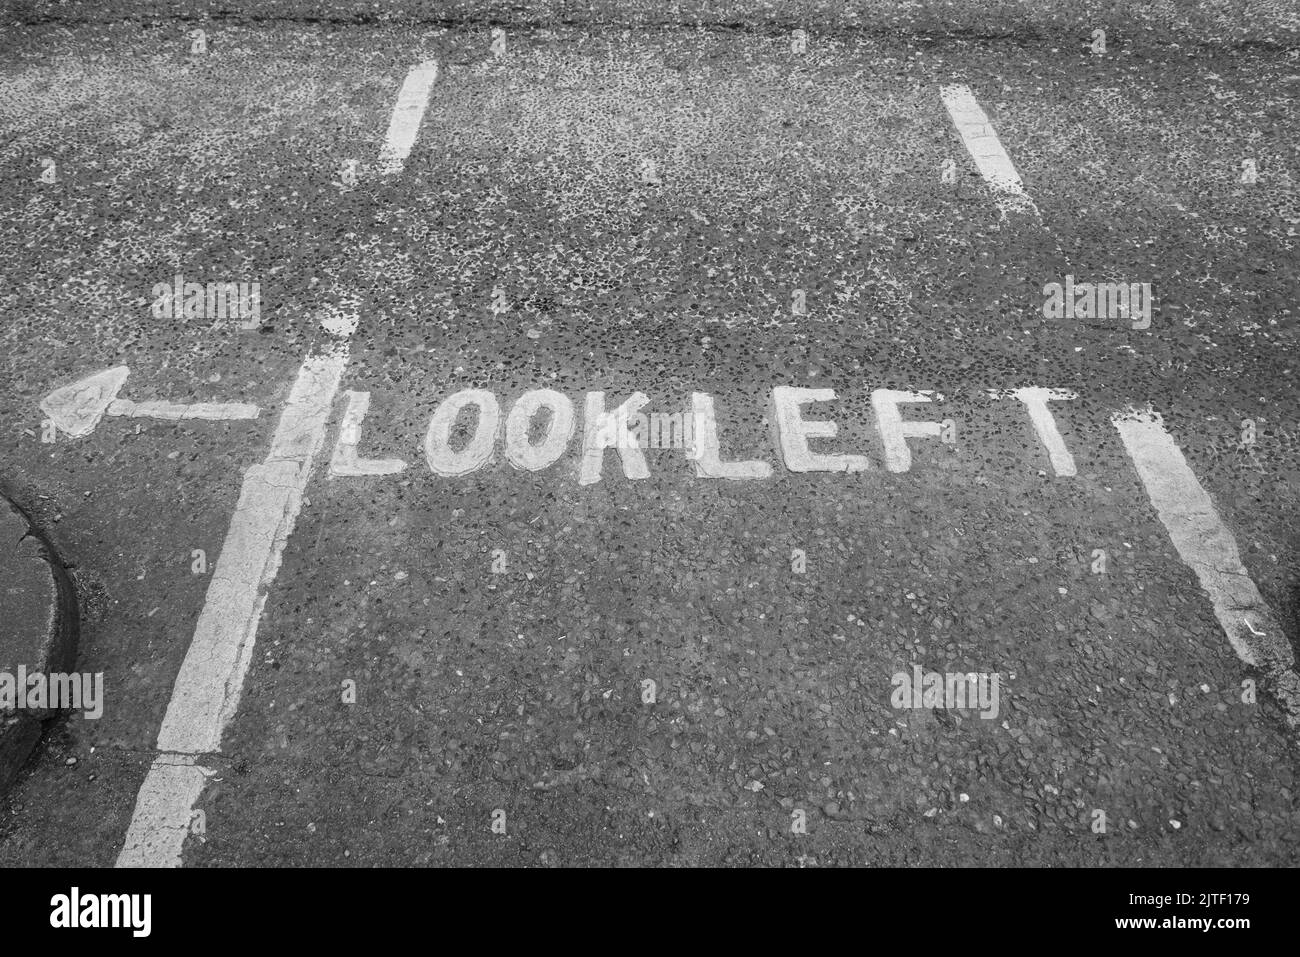 Una strada grigia a Dublino, Irlanda, con un cartello dipinto che dice "Look Left" con una freccia bianca. Foto Stock